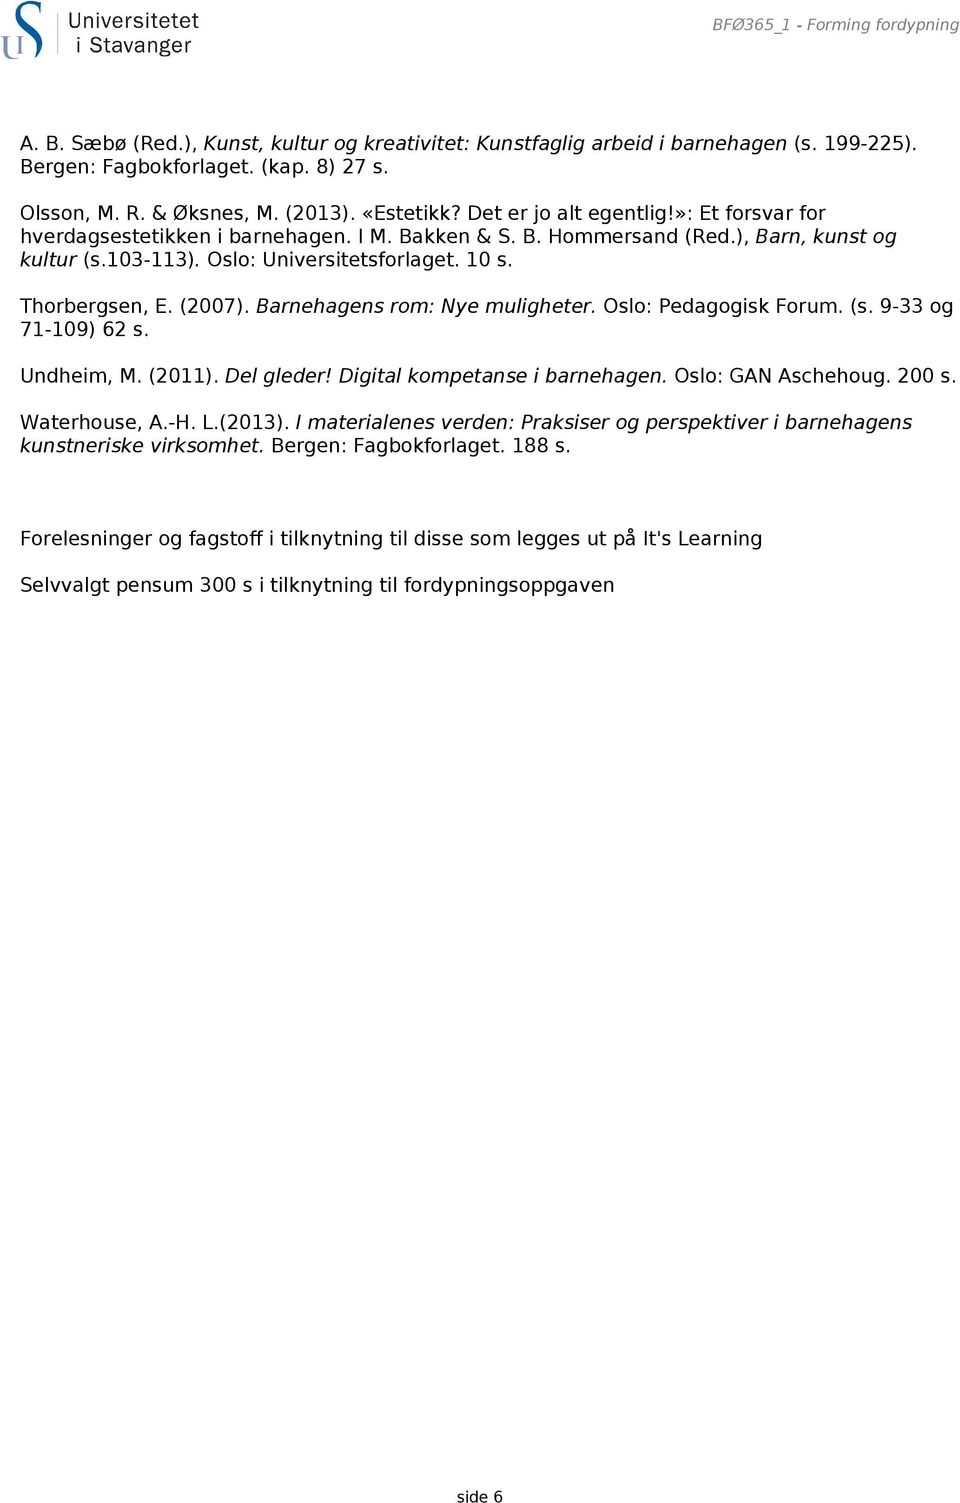 Thorbergsen, E. (2007). Barnehagens rom: Nye muligheter. Oslo: Pedagogisk Forum. (s. 9-33 og 71-109) 62 s. Undheim, M. (2011). Del gleder! Digital kompetanse i barnehagen. Oslo: GAN Aschehoug. 200 s.